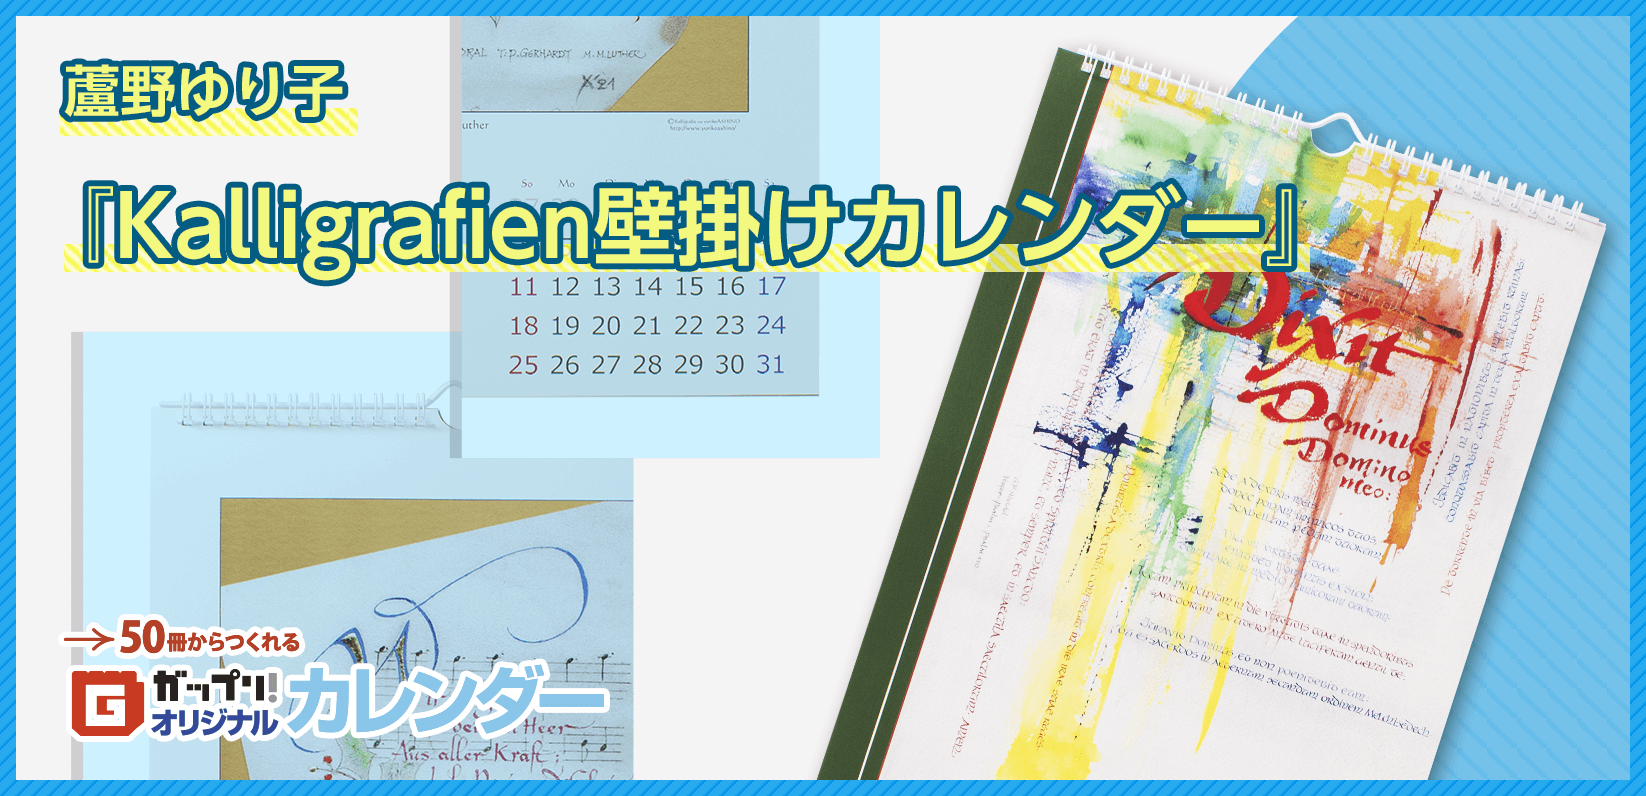 蘆野ゆり子様製作のオリジナルカレンダー「Kalligrafien壁掛けカレンダー」